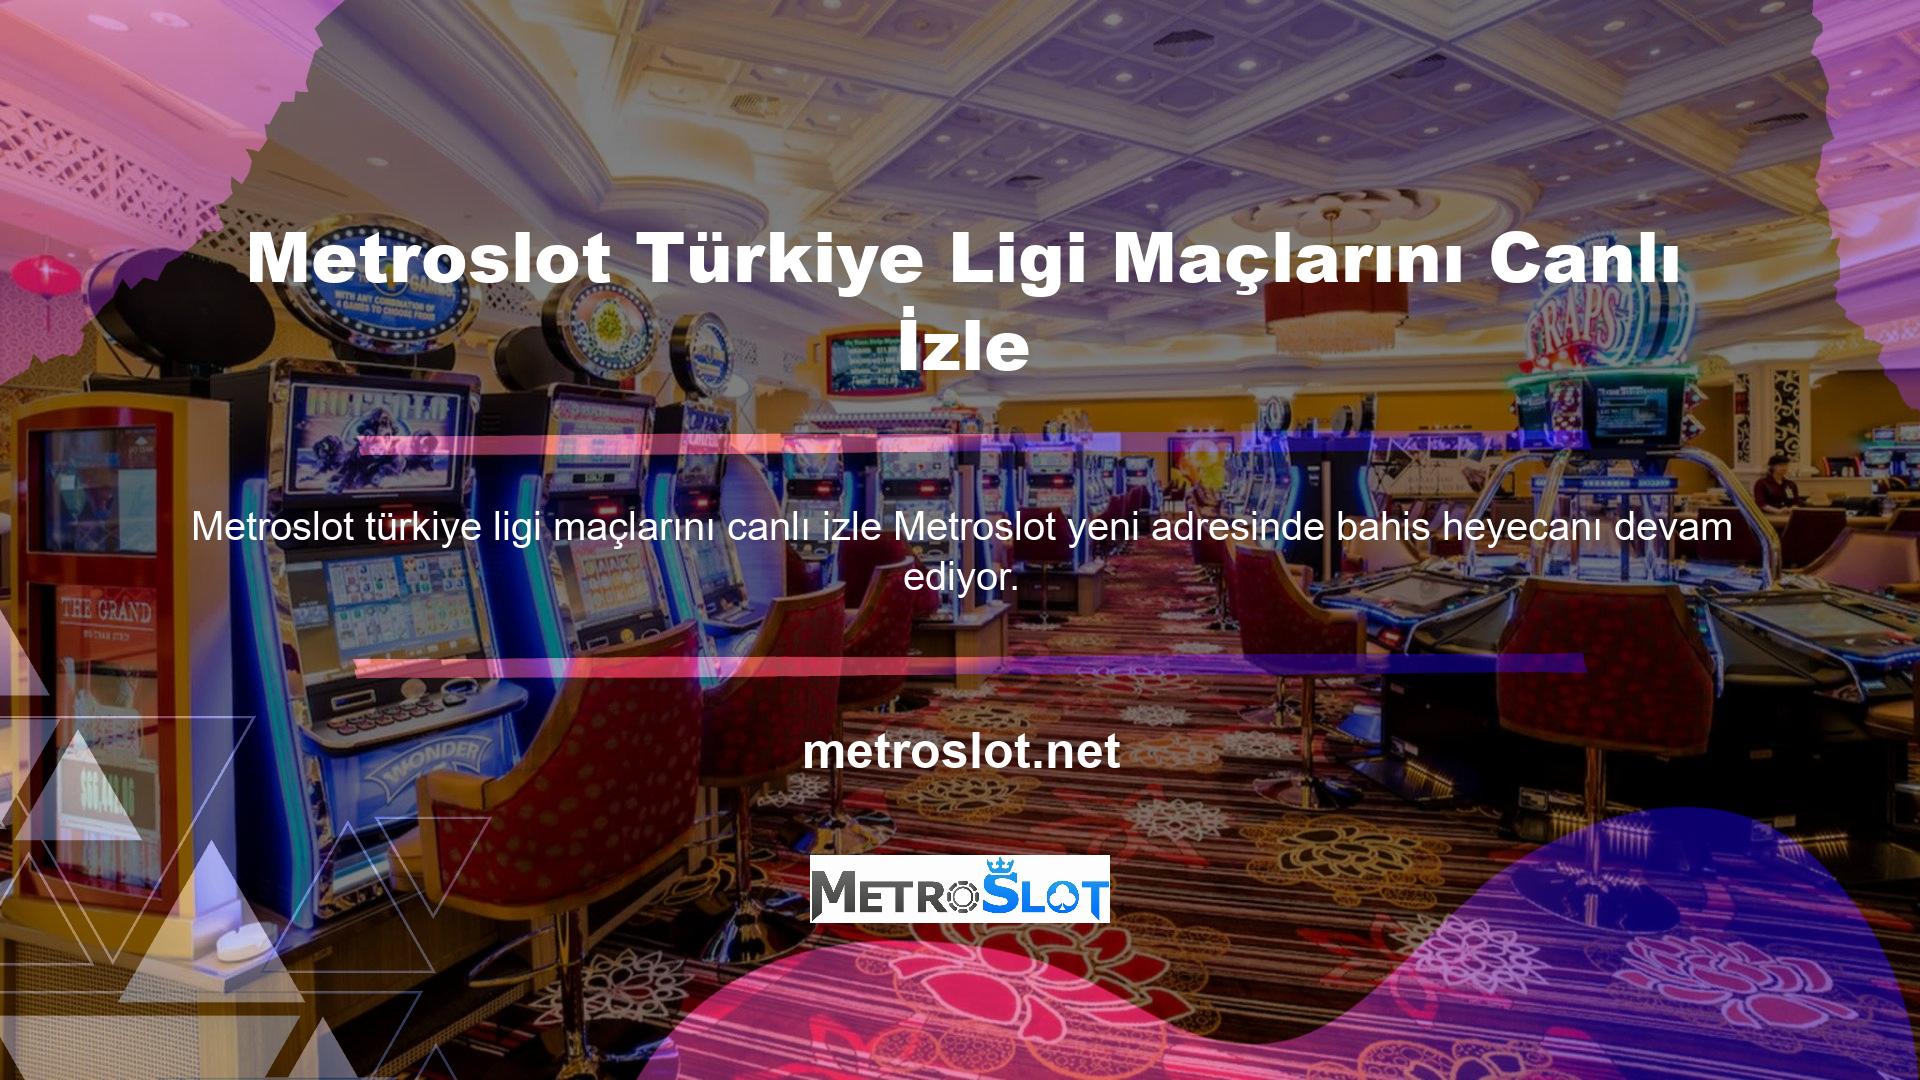 Metroslot Türkiye Ligi maçlarını canlı izleyin